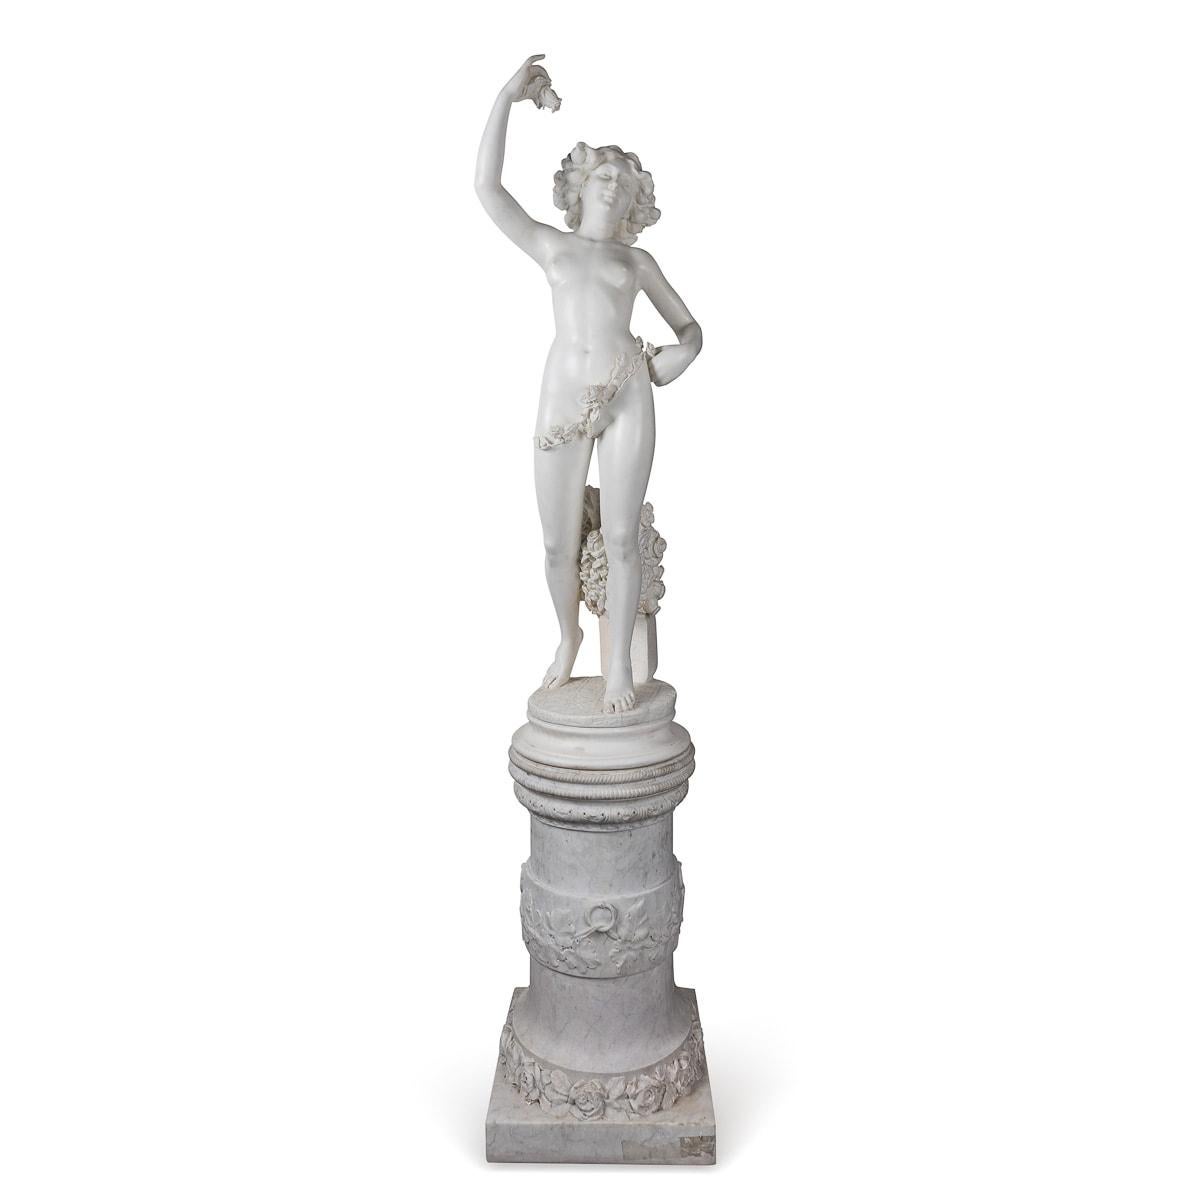 Réalisée au milieu du XIXe siècle, cette ancienne sculpture italienne en marbre représente une gracieuse femme nue drapée de fleurs. Elle tient délicatement une petite fleur dans une main, tandis que l'autre main repose sur sa hanche, sous ses pieds